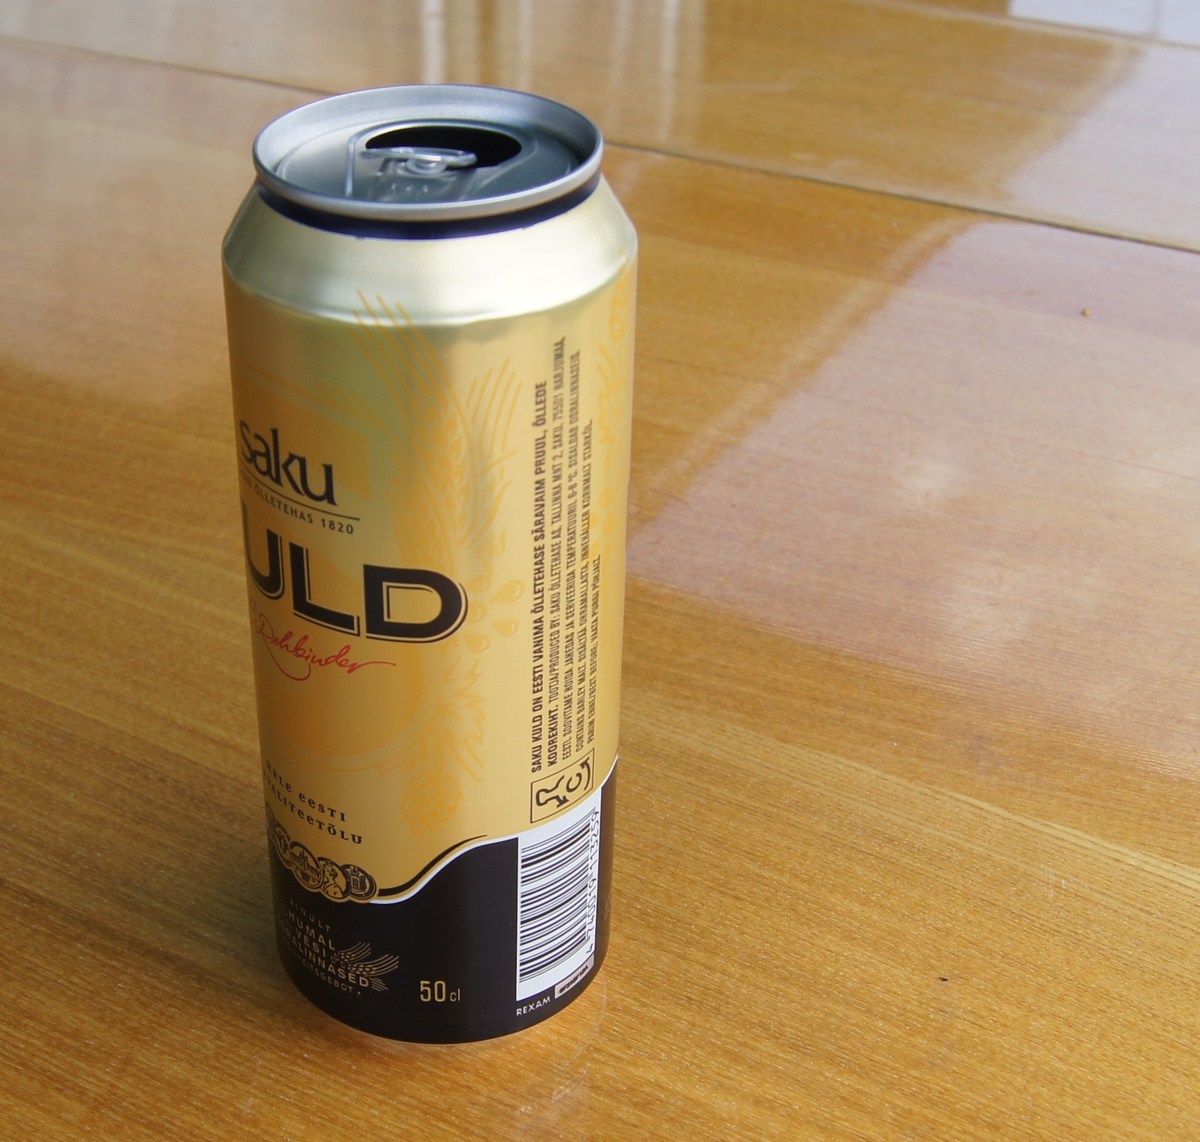  Пиво Saku Kuld.